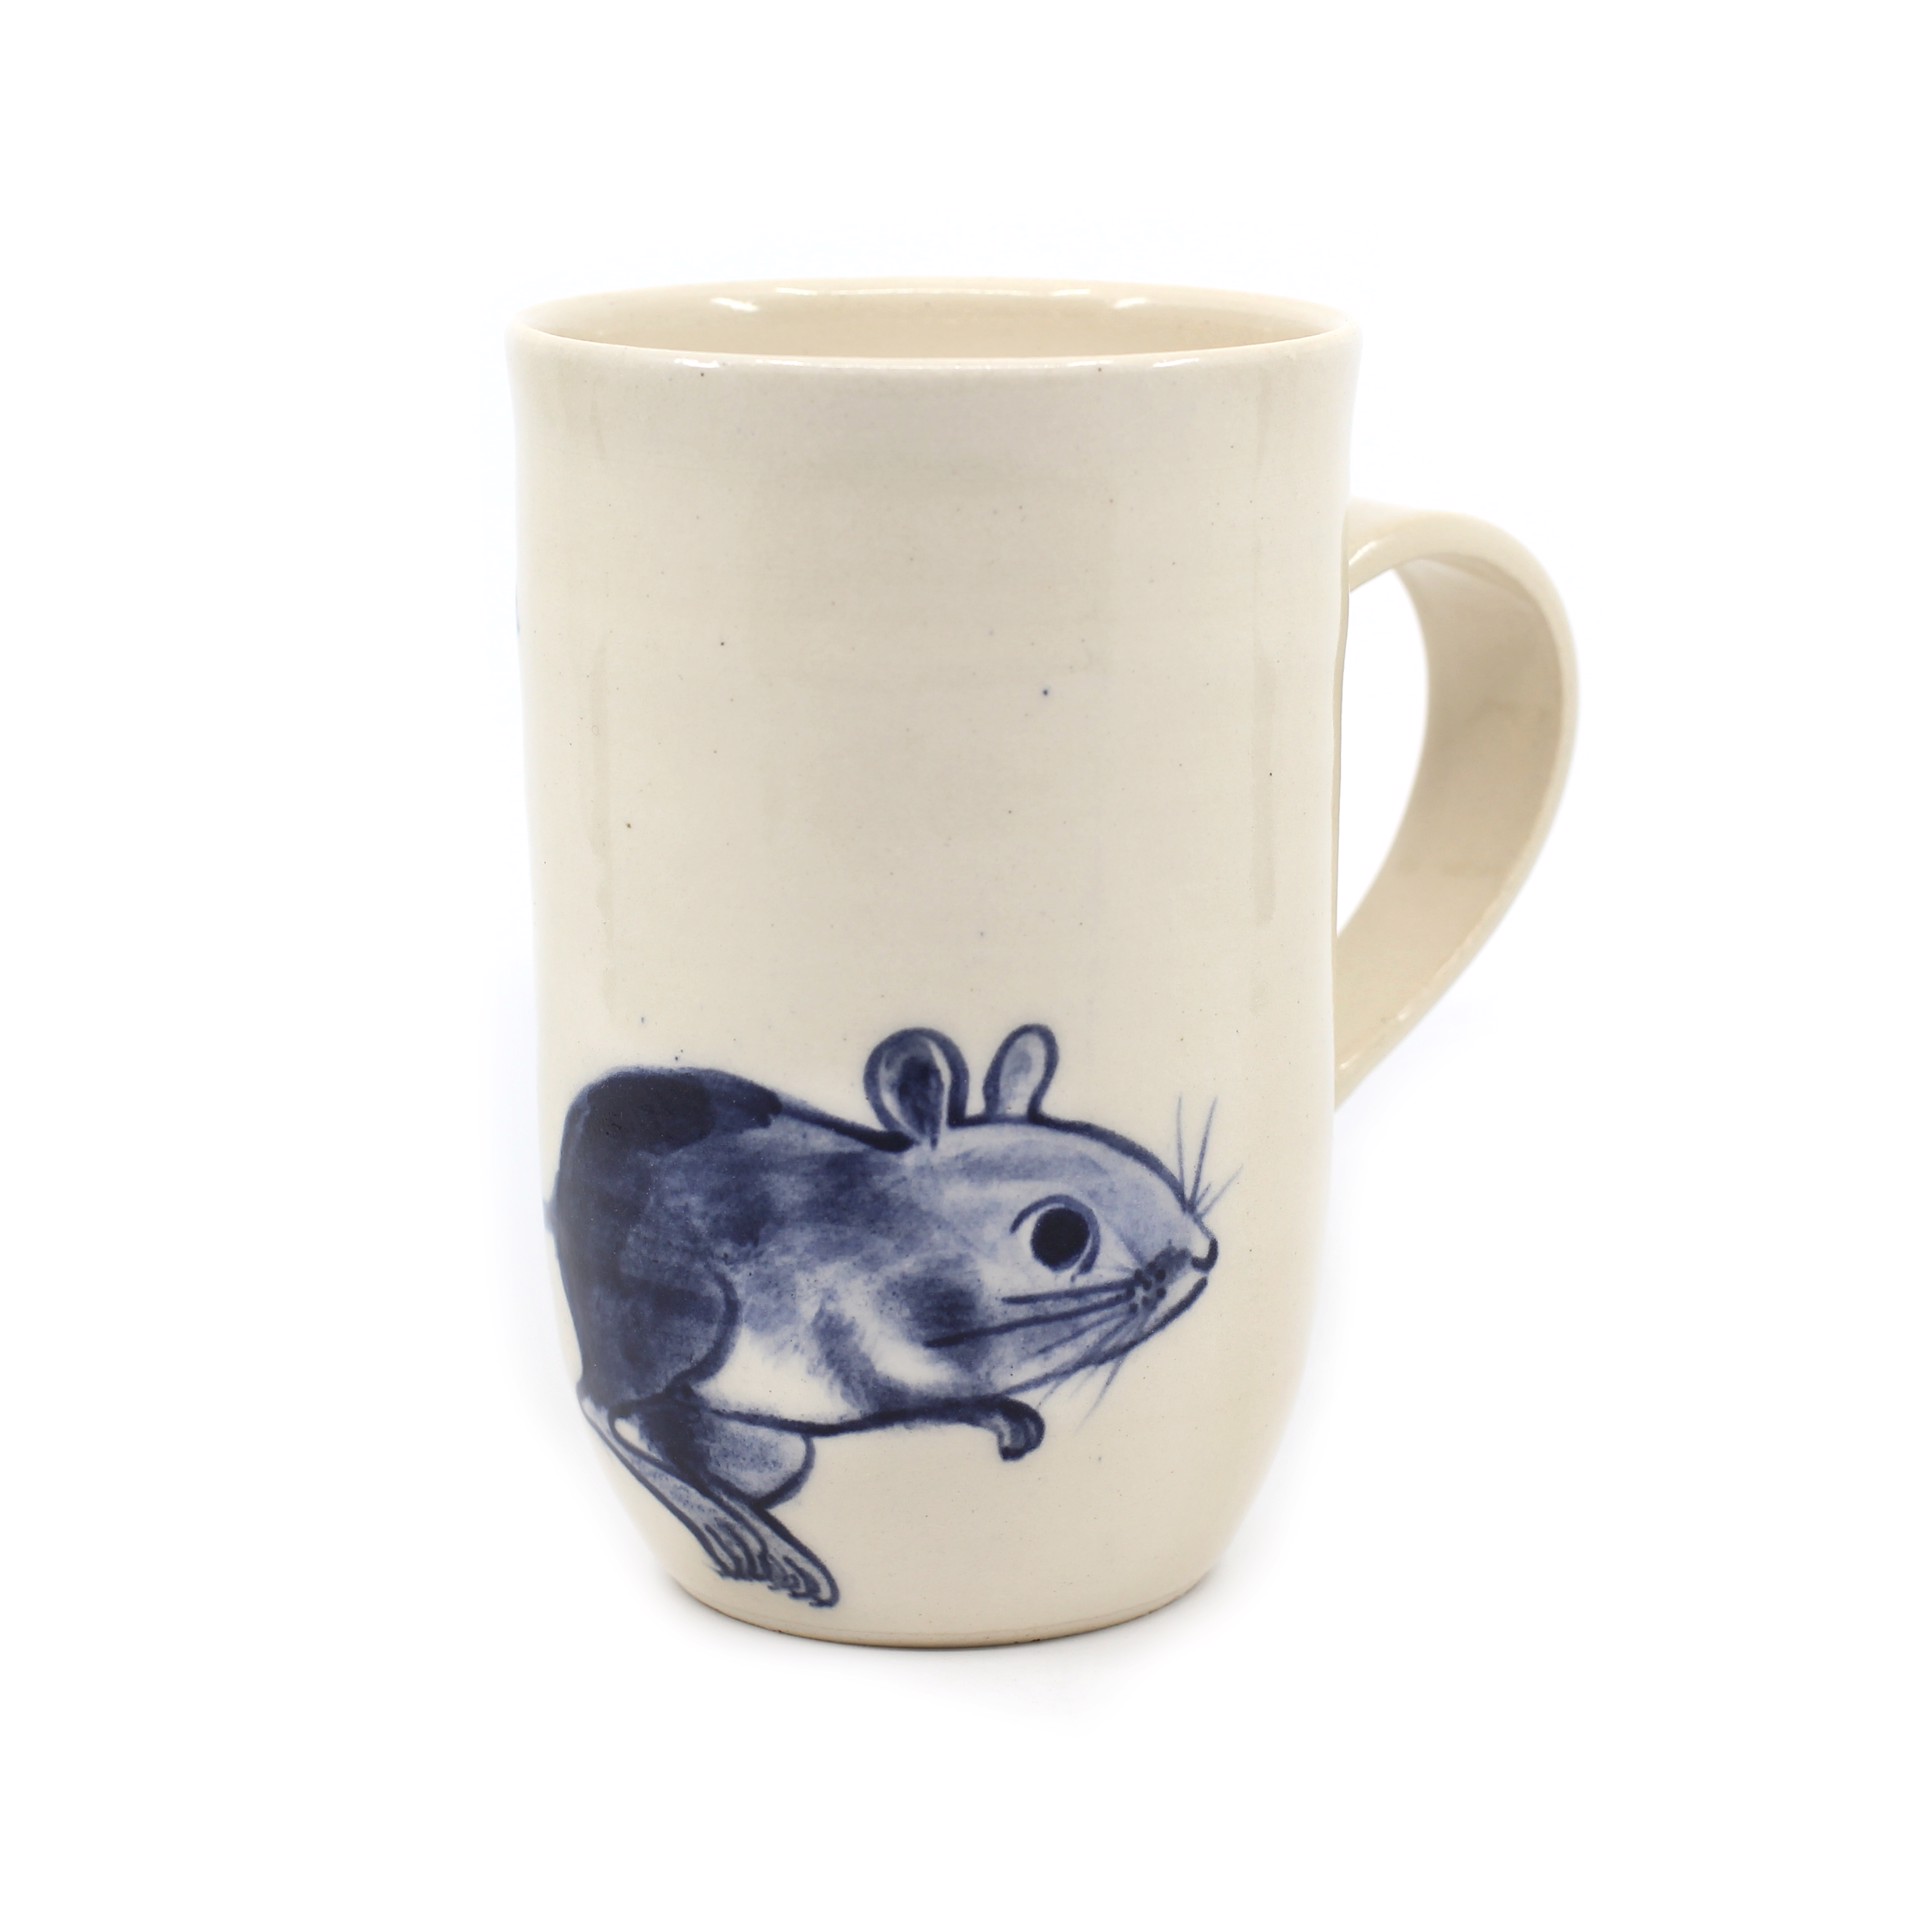 Mouse Mug by Kat Kinnick